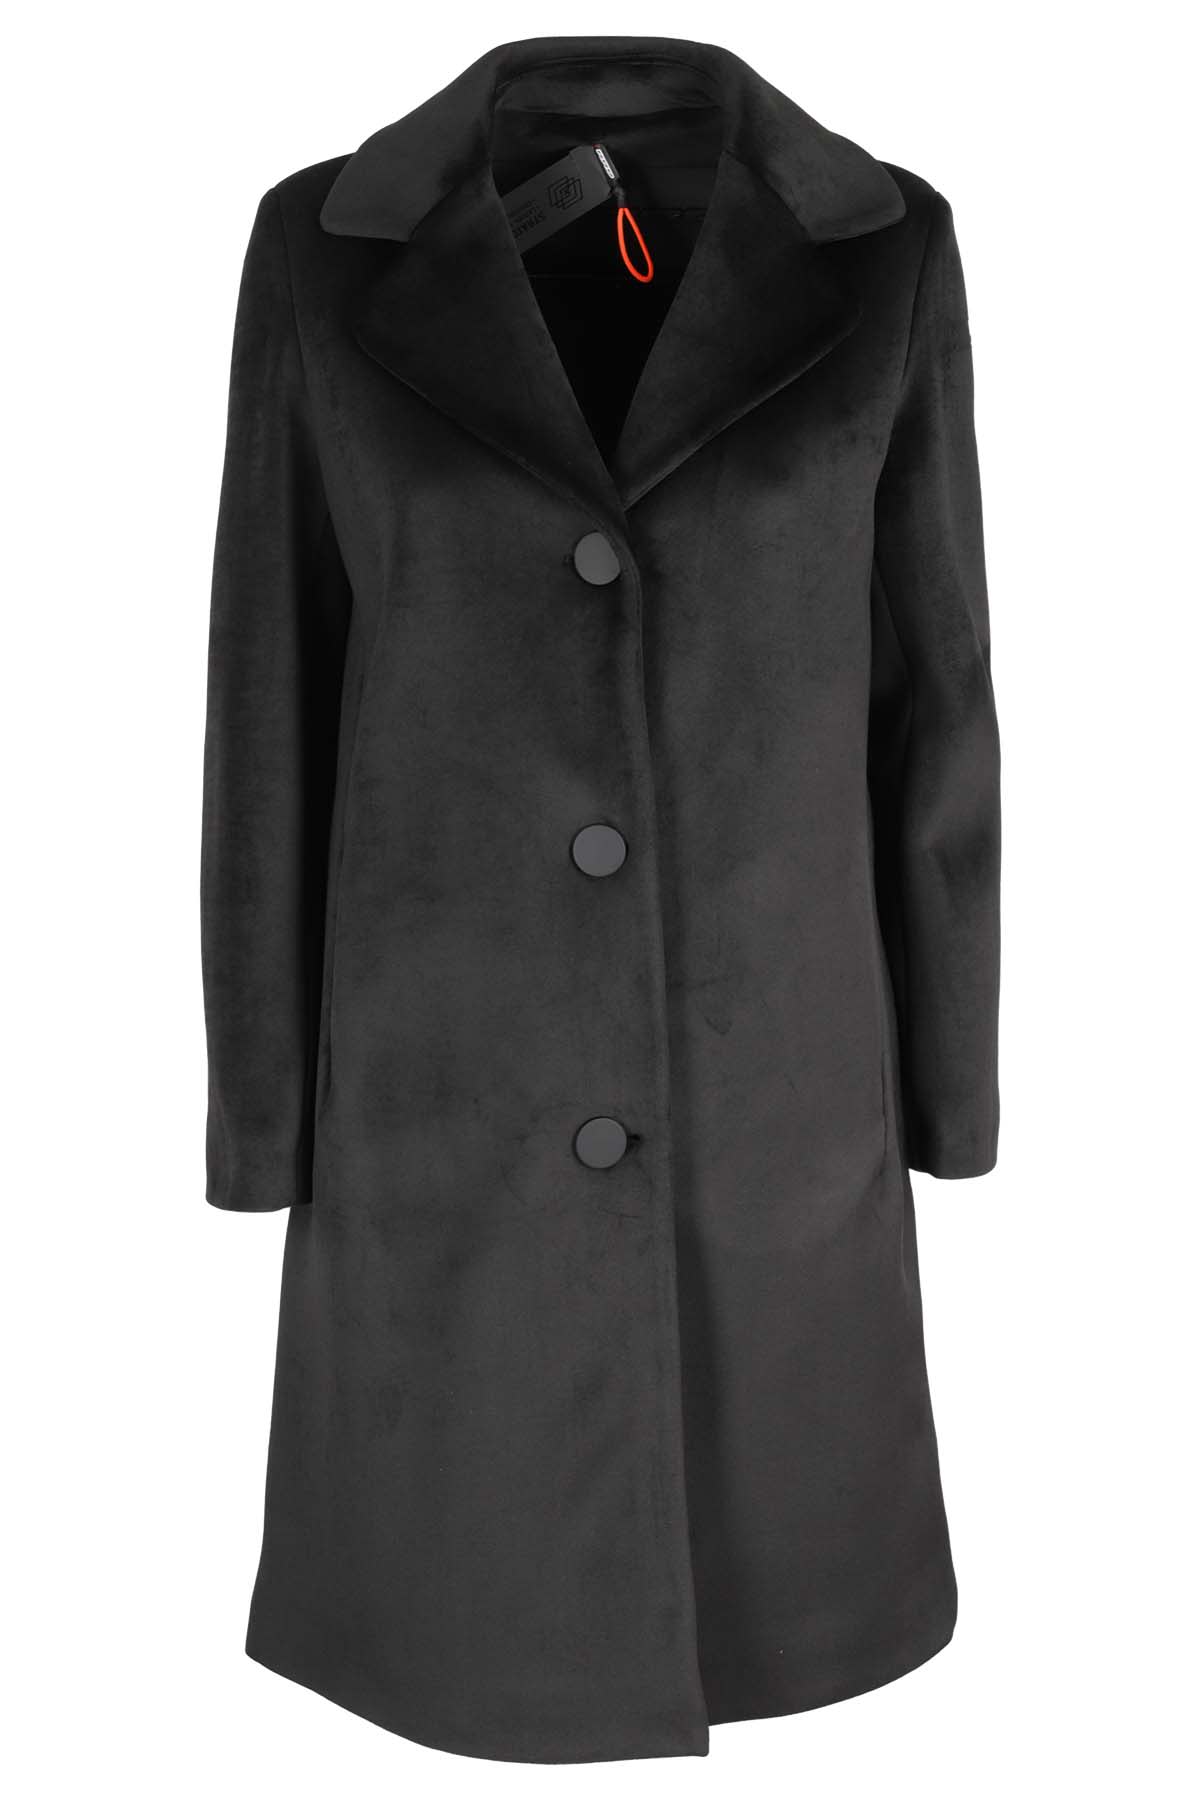 RRD - Roberto Ricci Design Jkt Velvet Neo Coat Over Lady